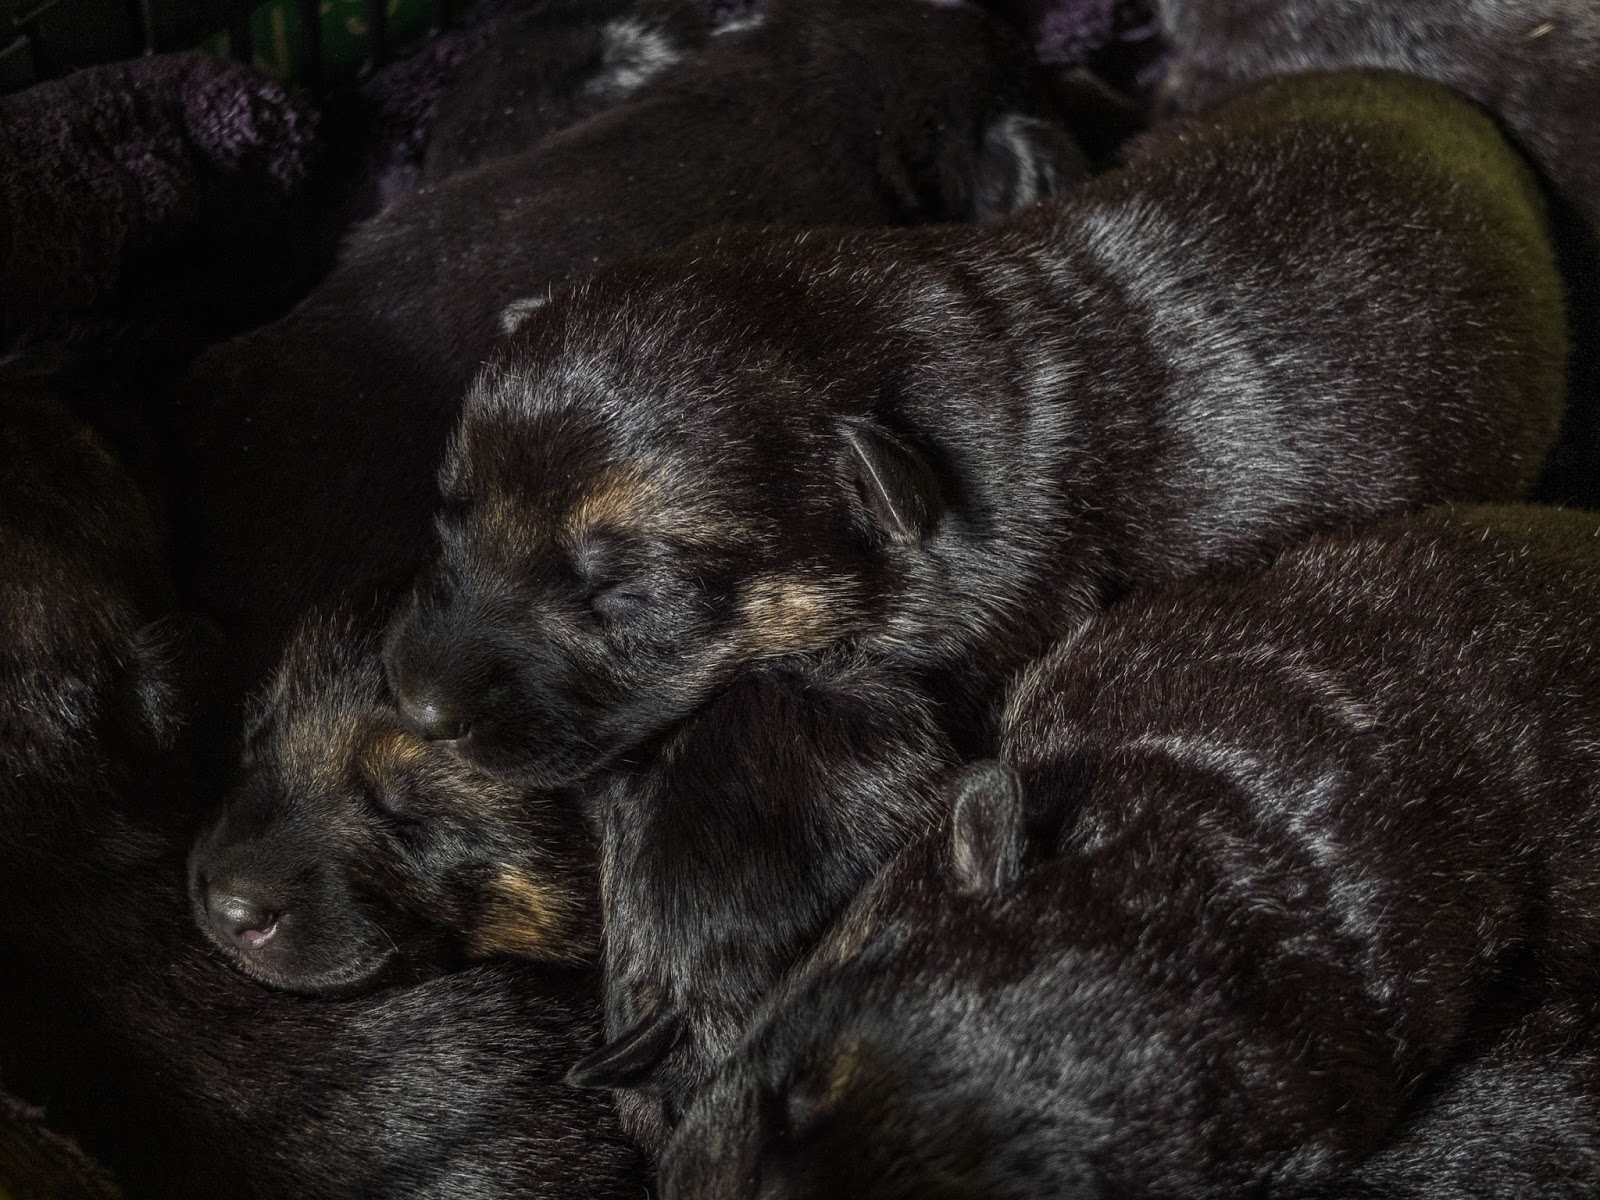 Two week old sleeping German Shepherd puppies.